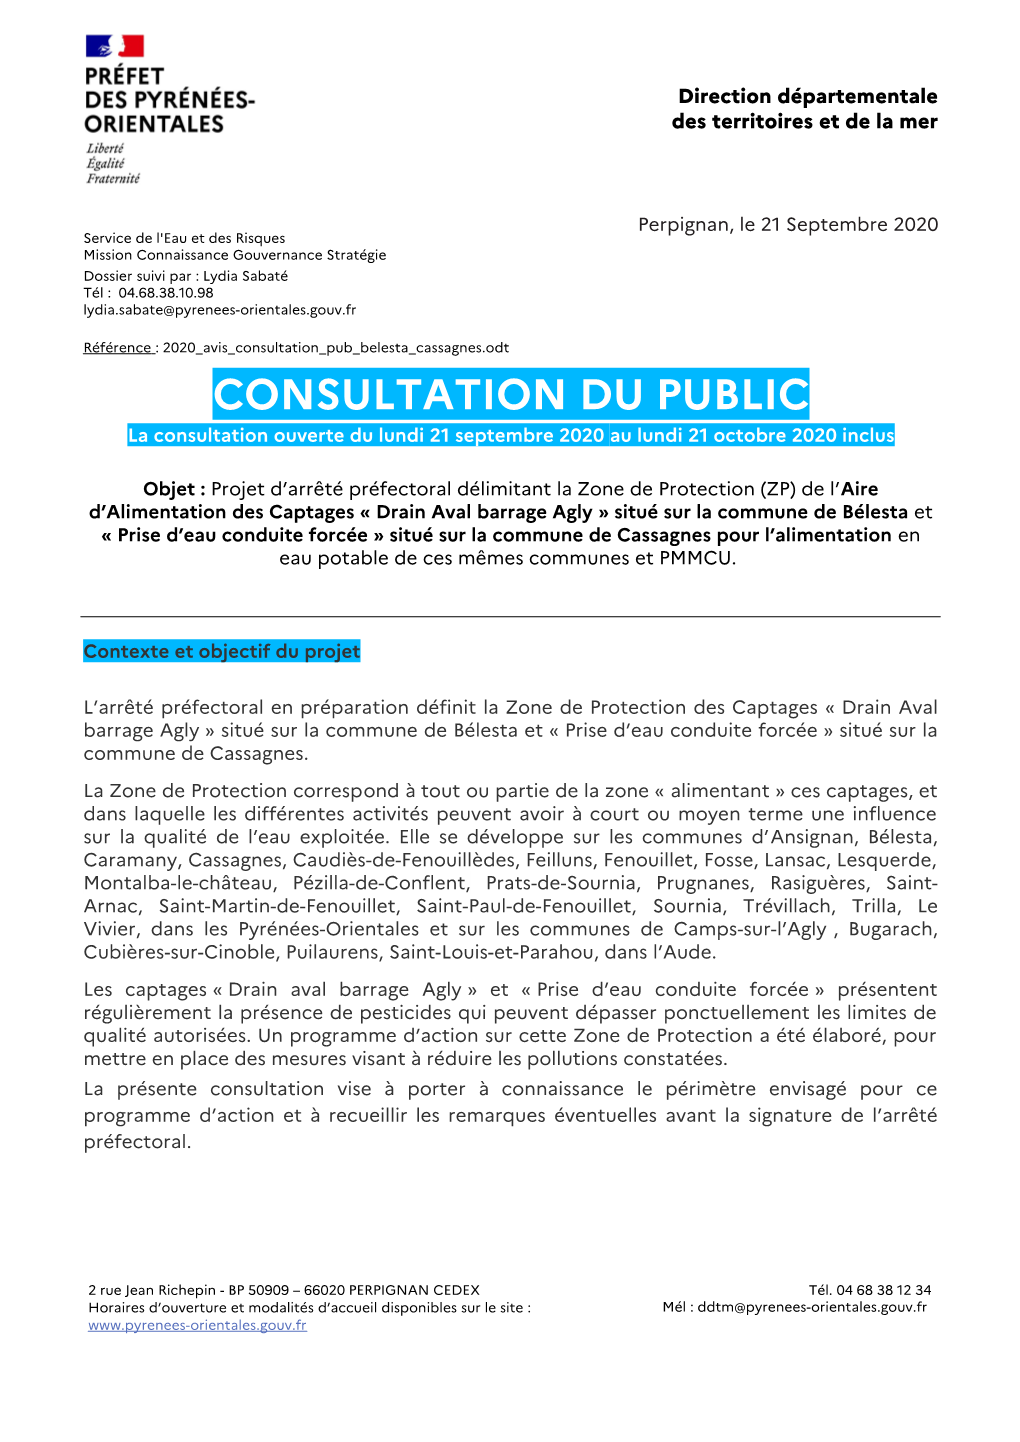 CONSULTATION DU PUBLIC La Consultation Ouverte Du Lundi 21 Septembre 2020 Au Lundi 21 Octobre 2020 Inclus